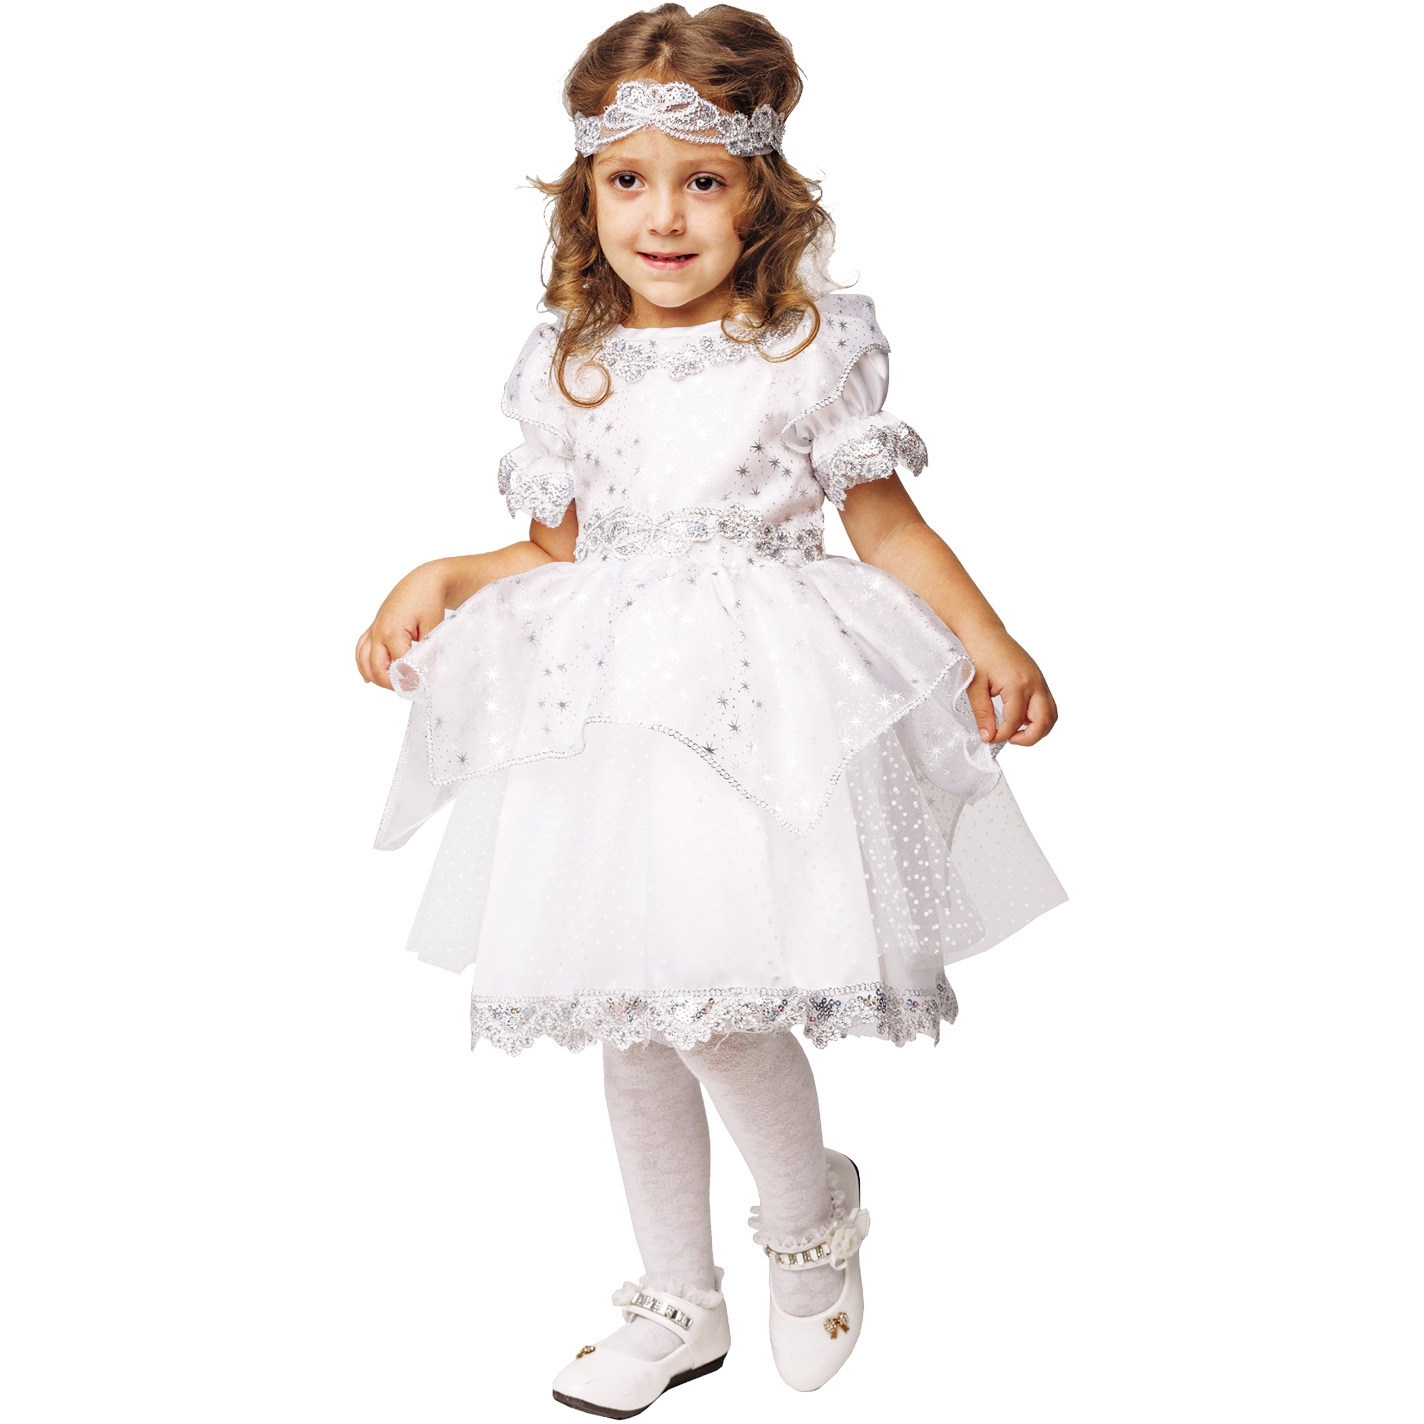 Карнавальный костюм "Снежинка" (платье, повязка на голову) размер 110-56 2022 к-18-28